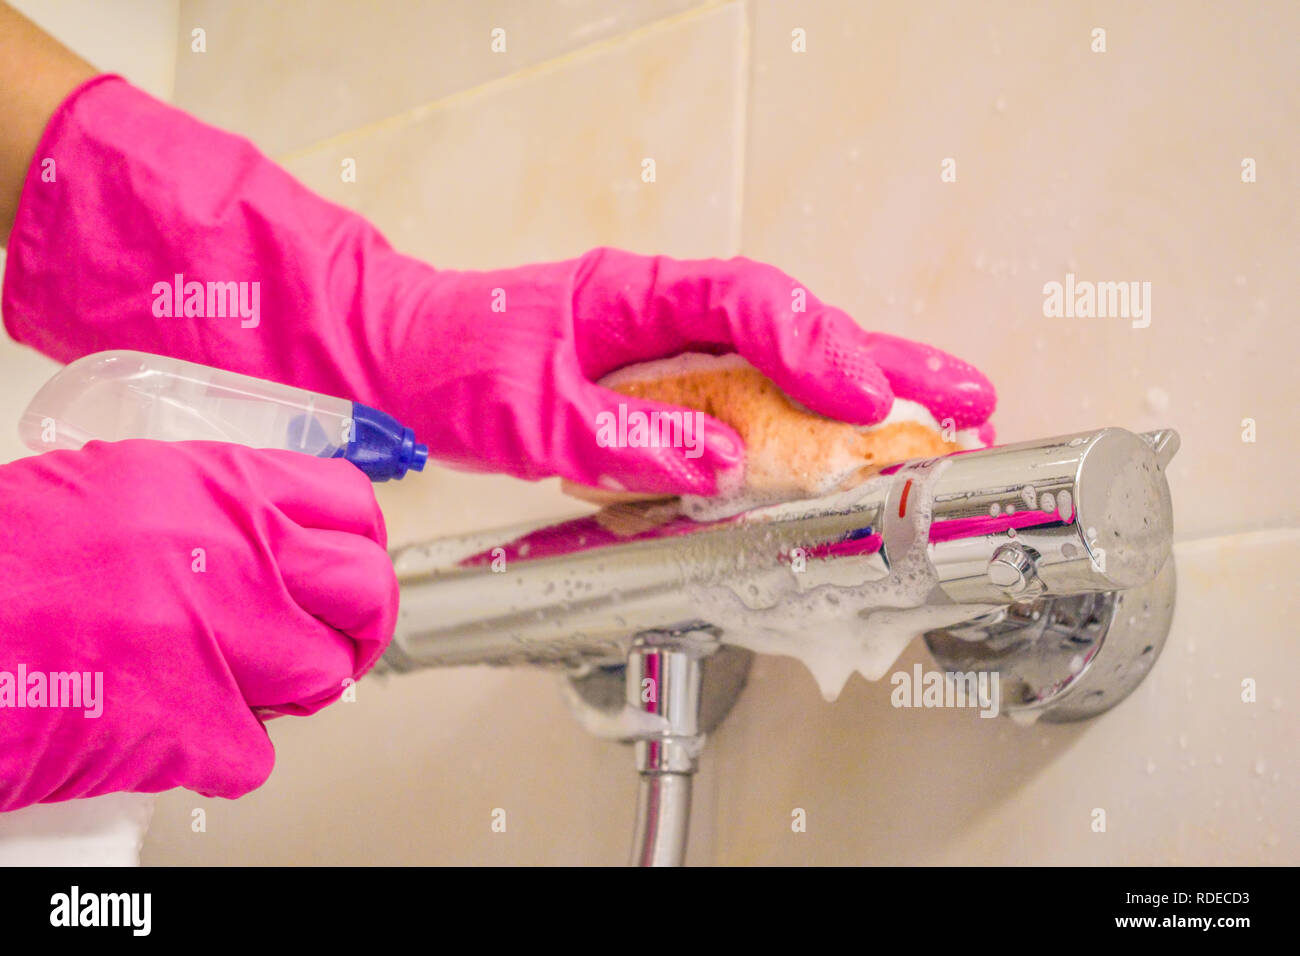 Main de femme dans des gants en caoutchouc rose baignoire de douche Nettoyage avec détergent spray dans salle de bains Banque D'Images